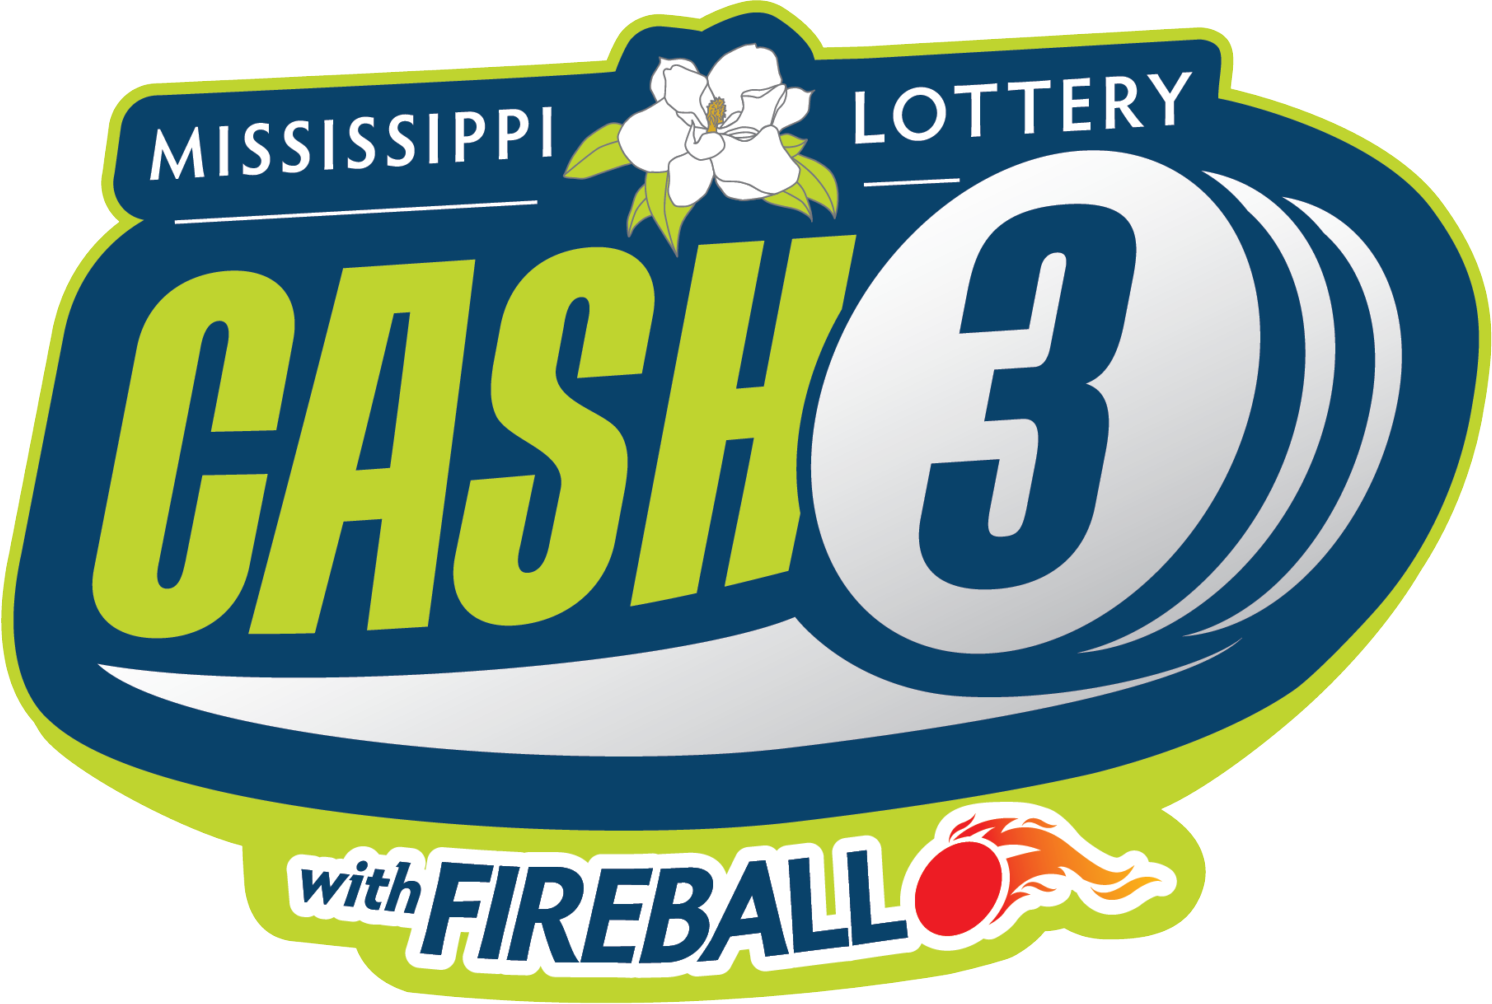 Mississippi Cash 3 Evening Results